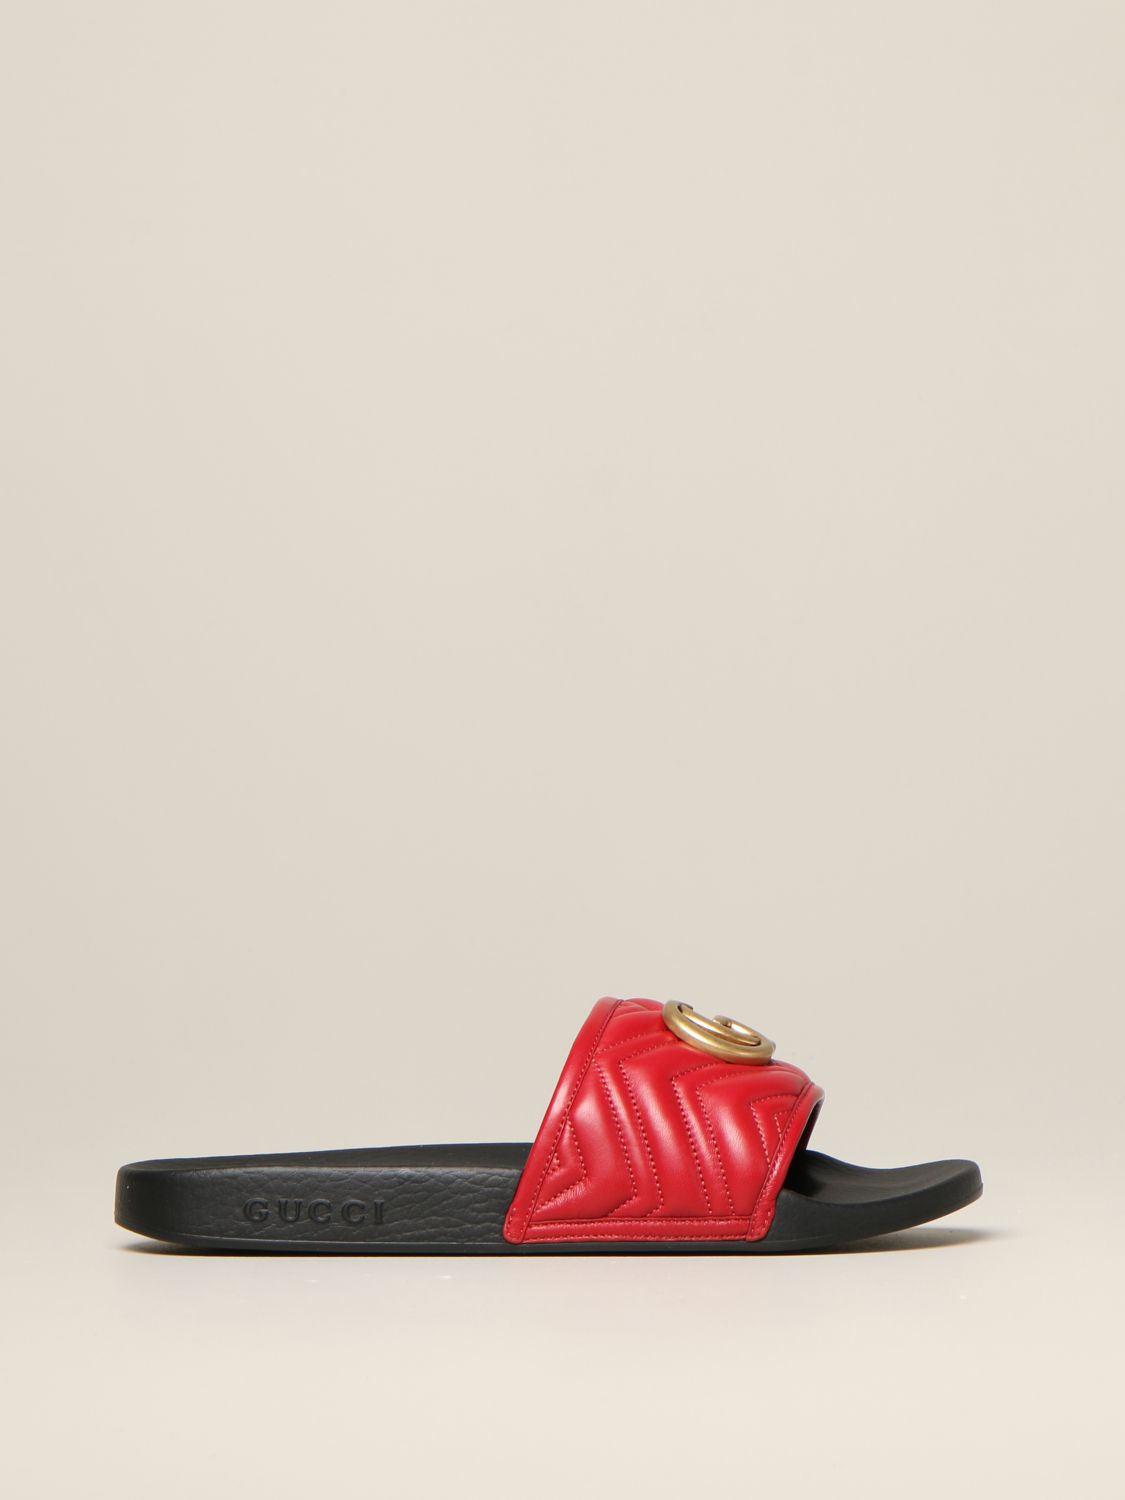 Afskrække Jakke Modtager GUCCI: Pursuit sandal in leather with GG Marmont monogram - Red | Gucci  sandals 603701 0R030 online on GIGLIO.COM